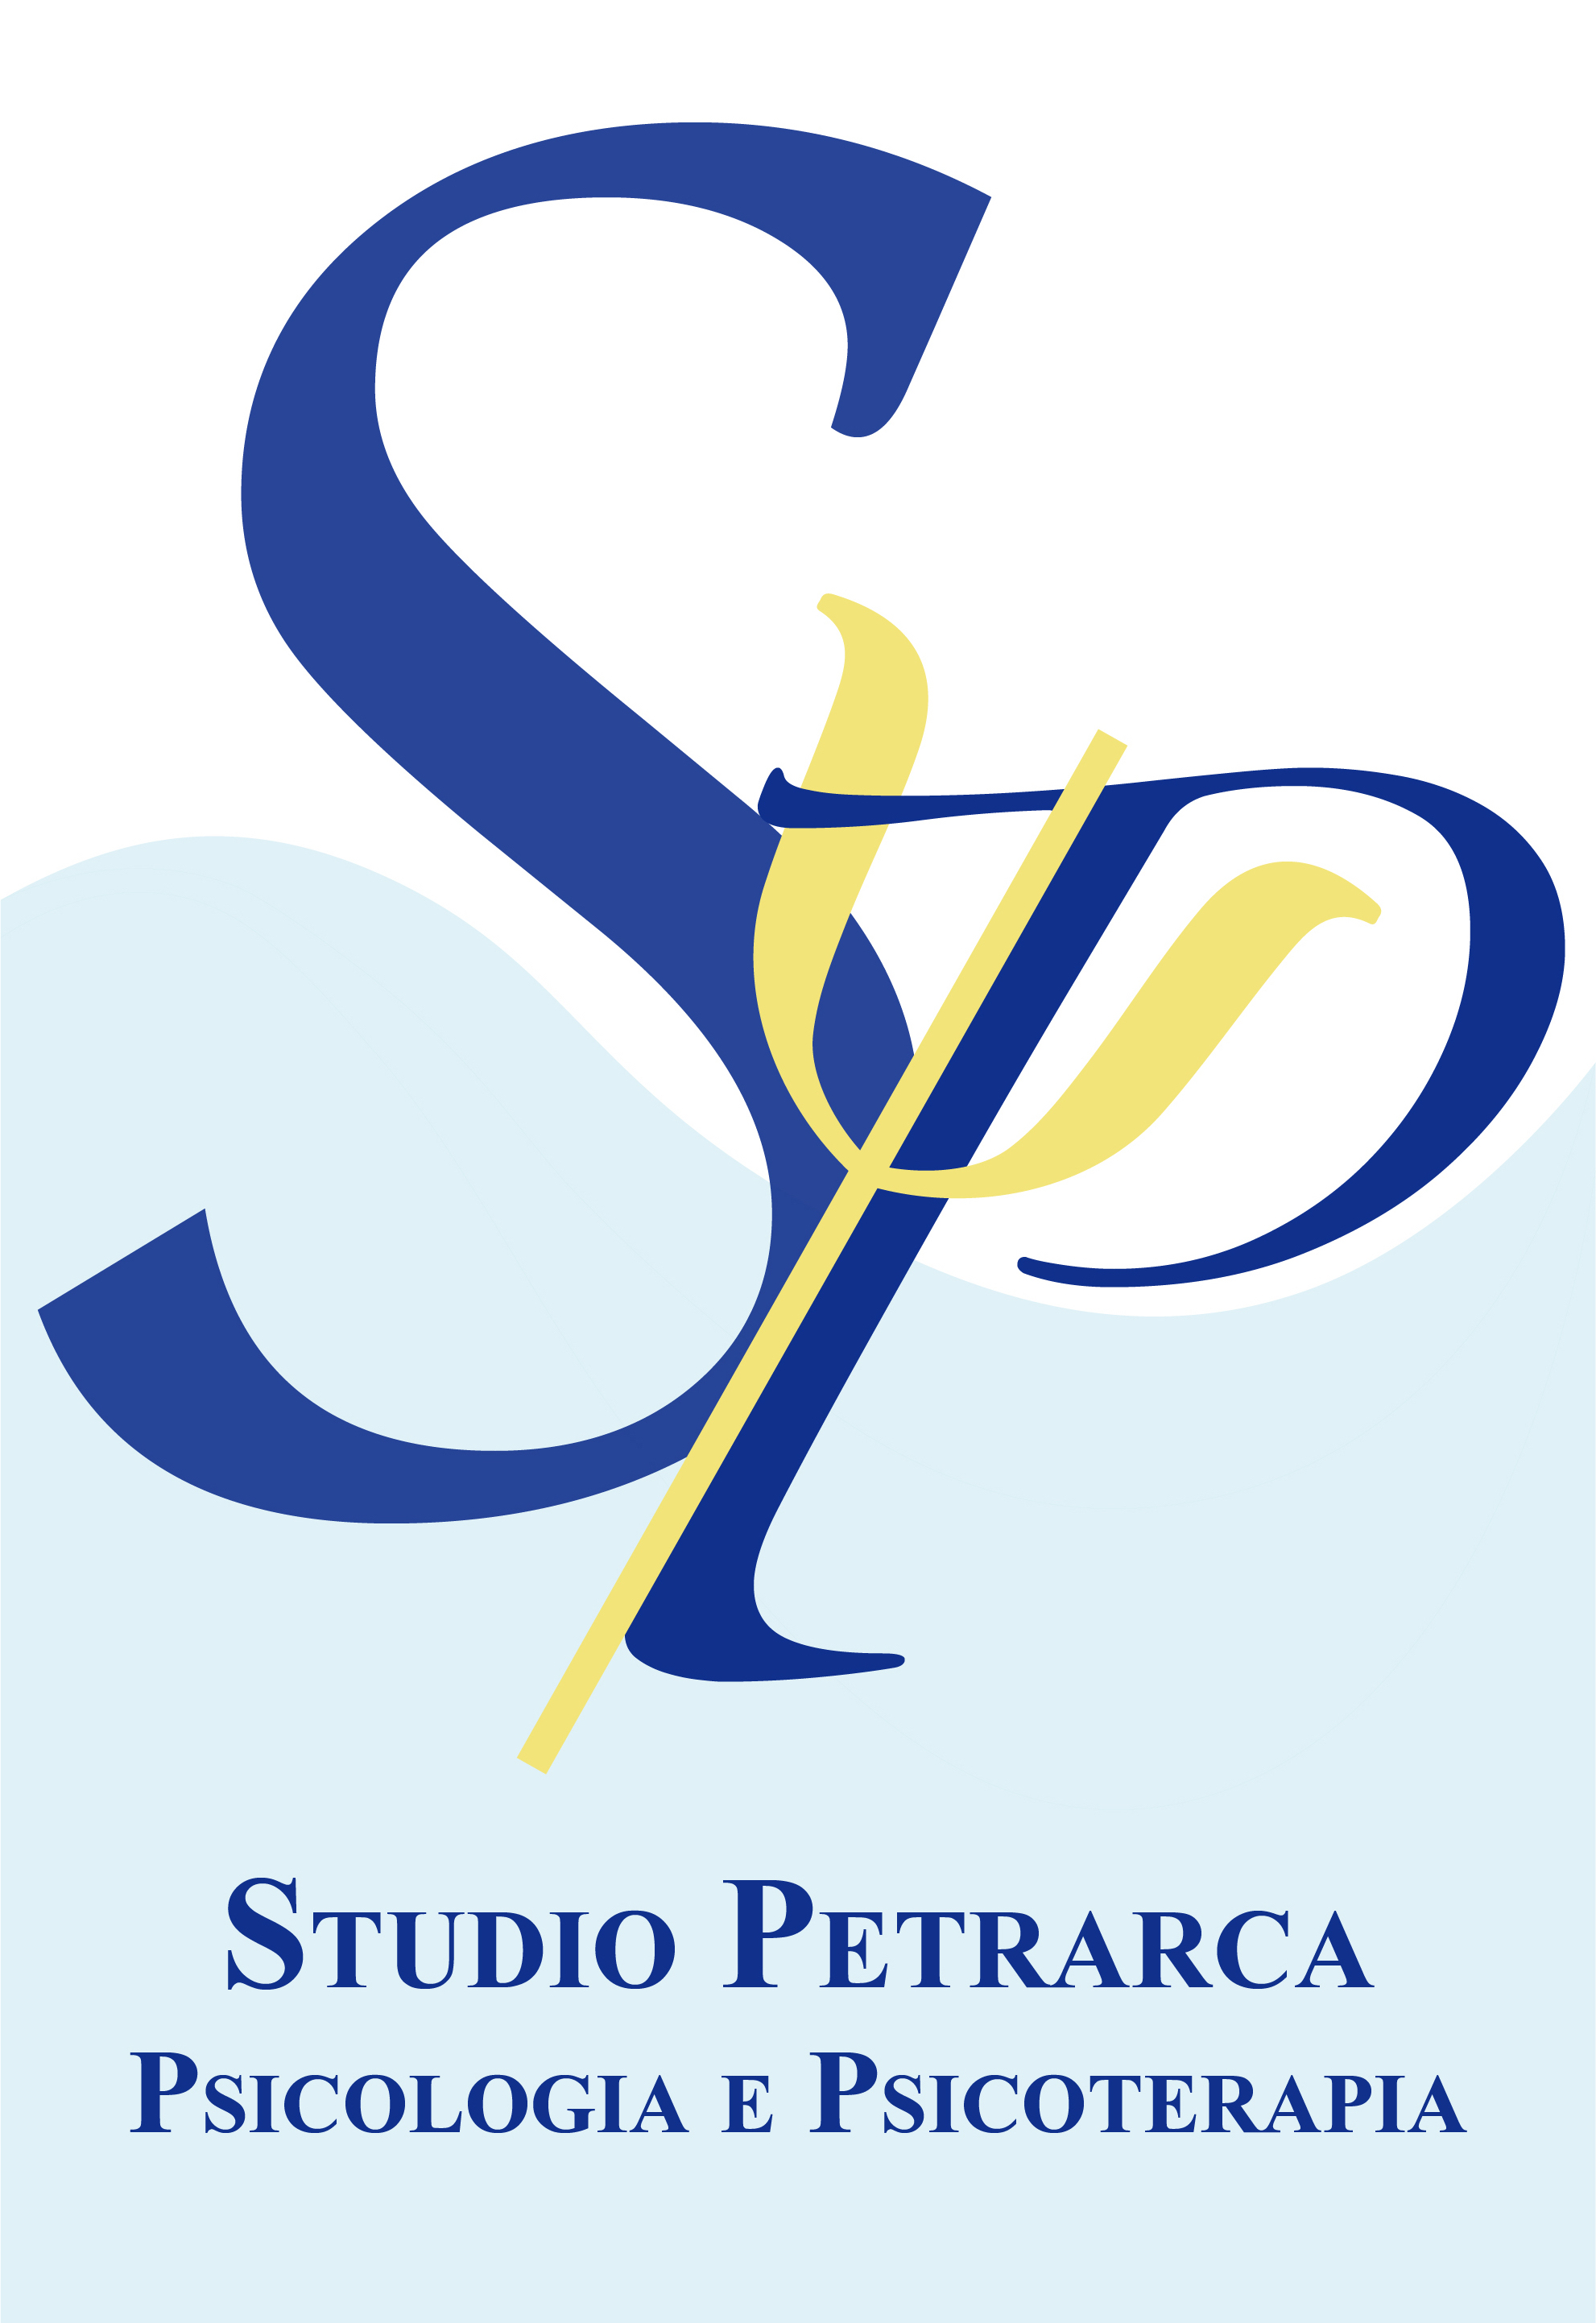 SP  -  Studio Petrarca